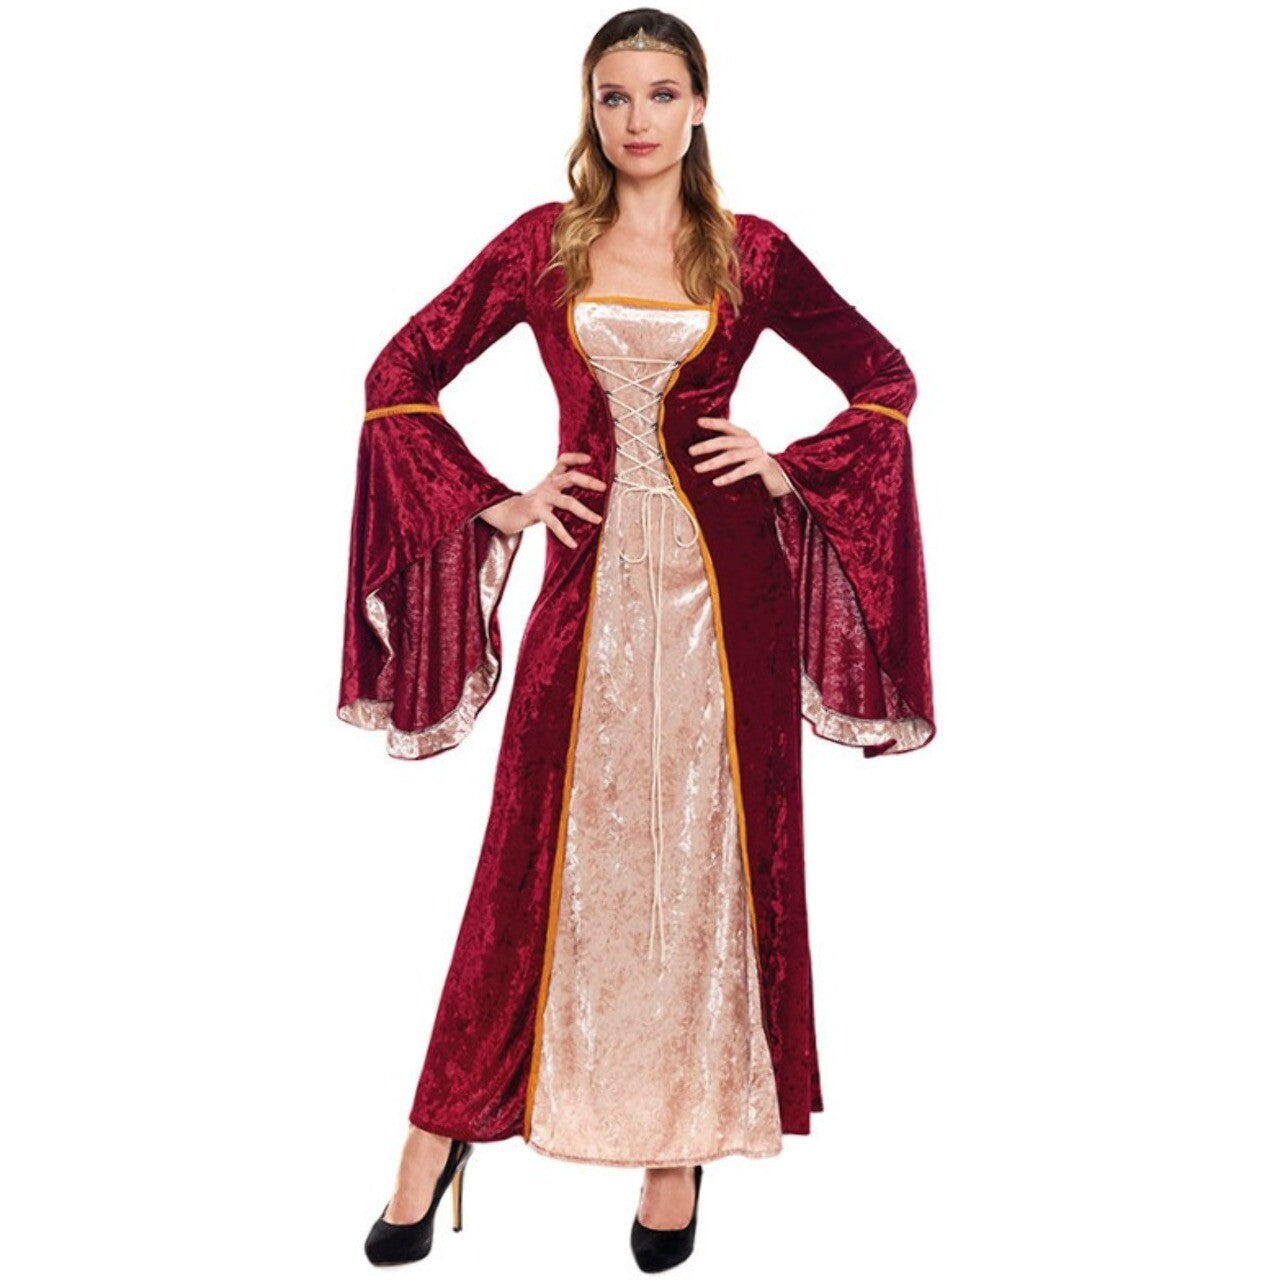 Acquista online costume da regina medievale Clarissa per adulto